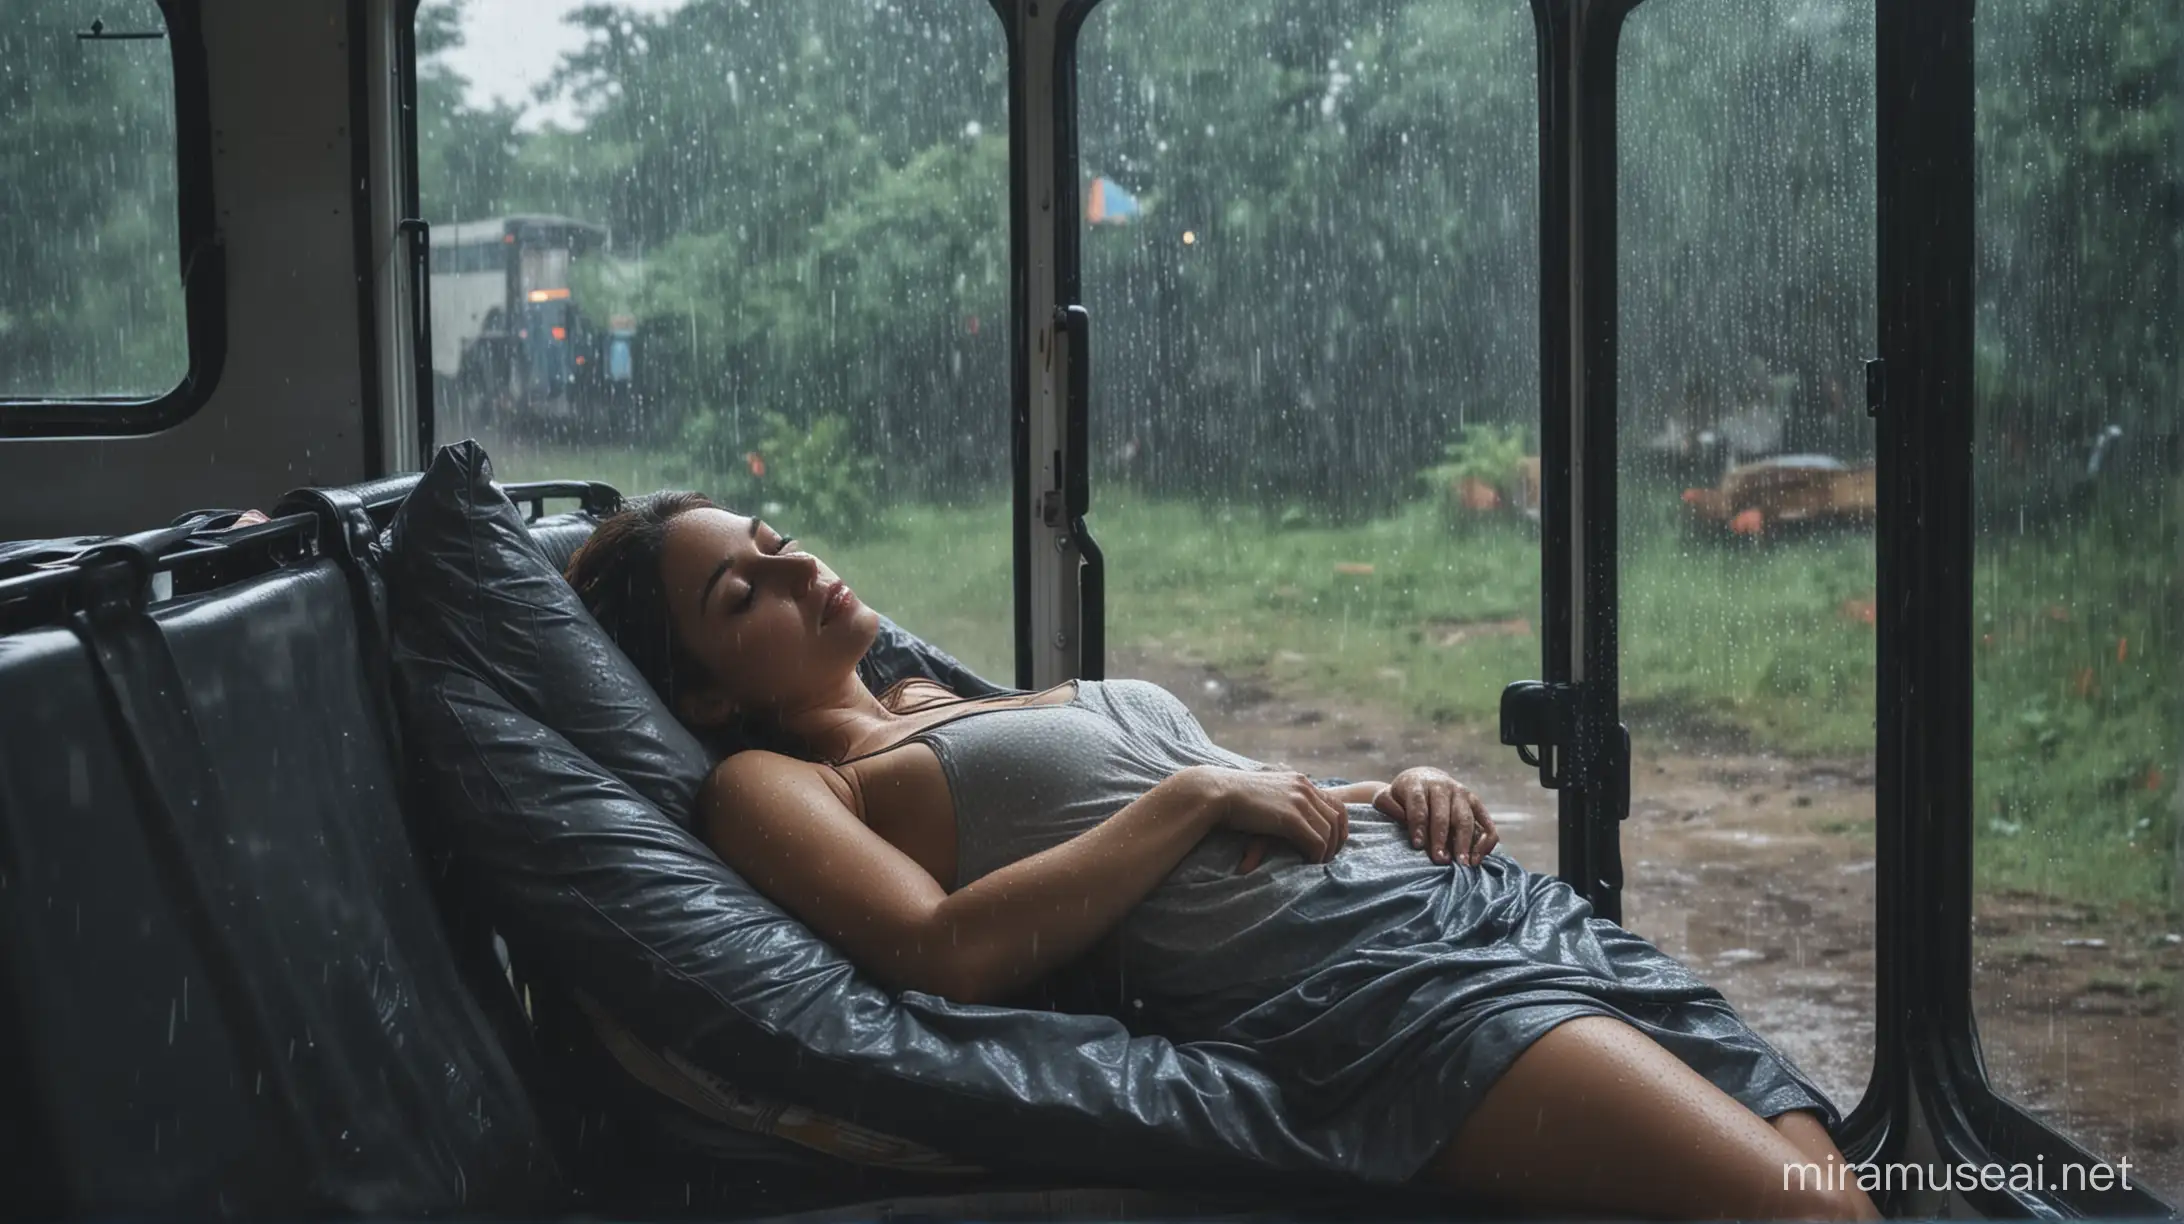 seorang wanita sexy sedang tertidur didalam bus saat sedang hujan deras di tempat kemah